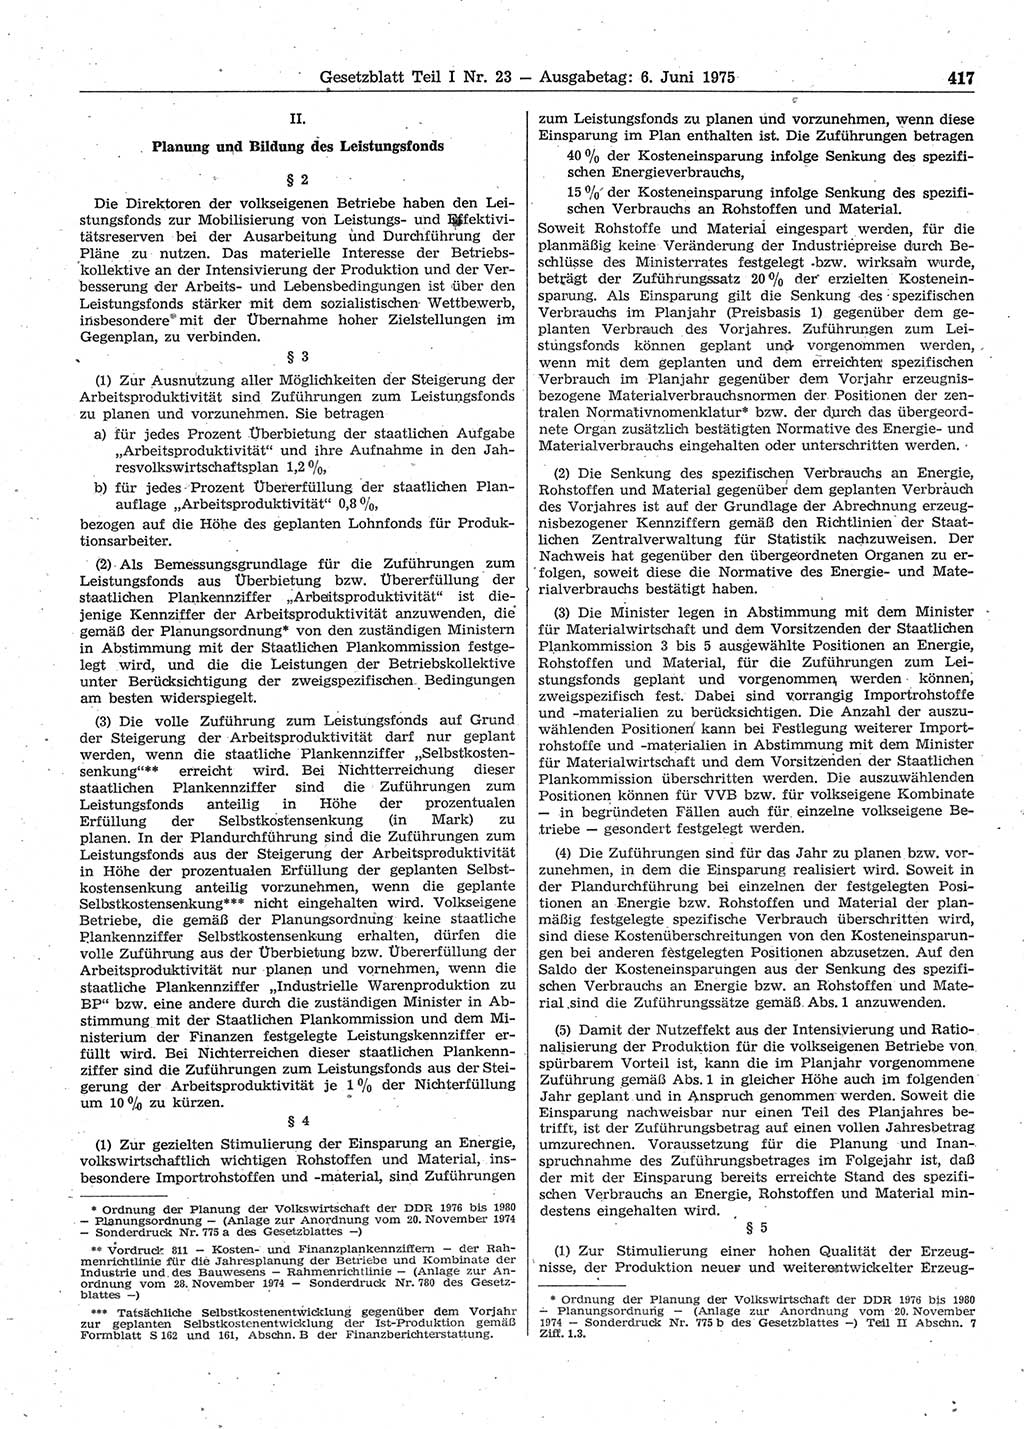 Gesetzblatt (GBl.) der Deutschen Demokratischen Republik (DDR) Teil Ⅰ 1975, Seite 417 (GBl. DDR Ⅰ 1975, S. 417)